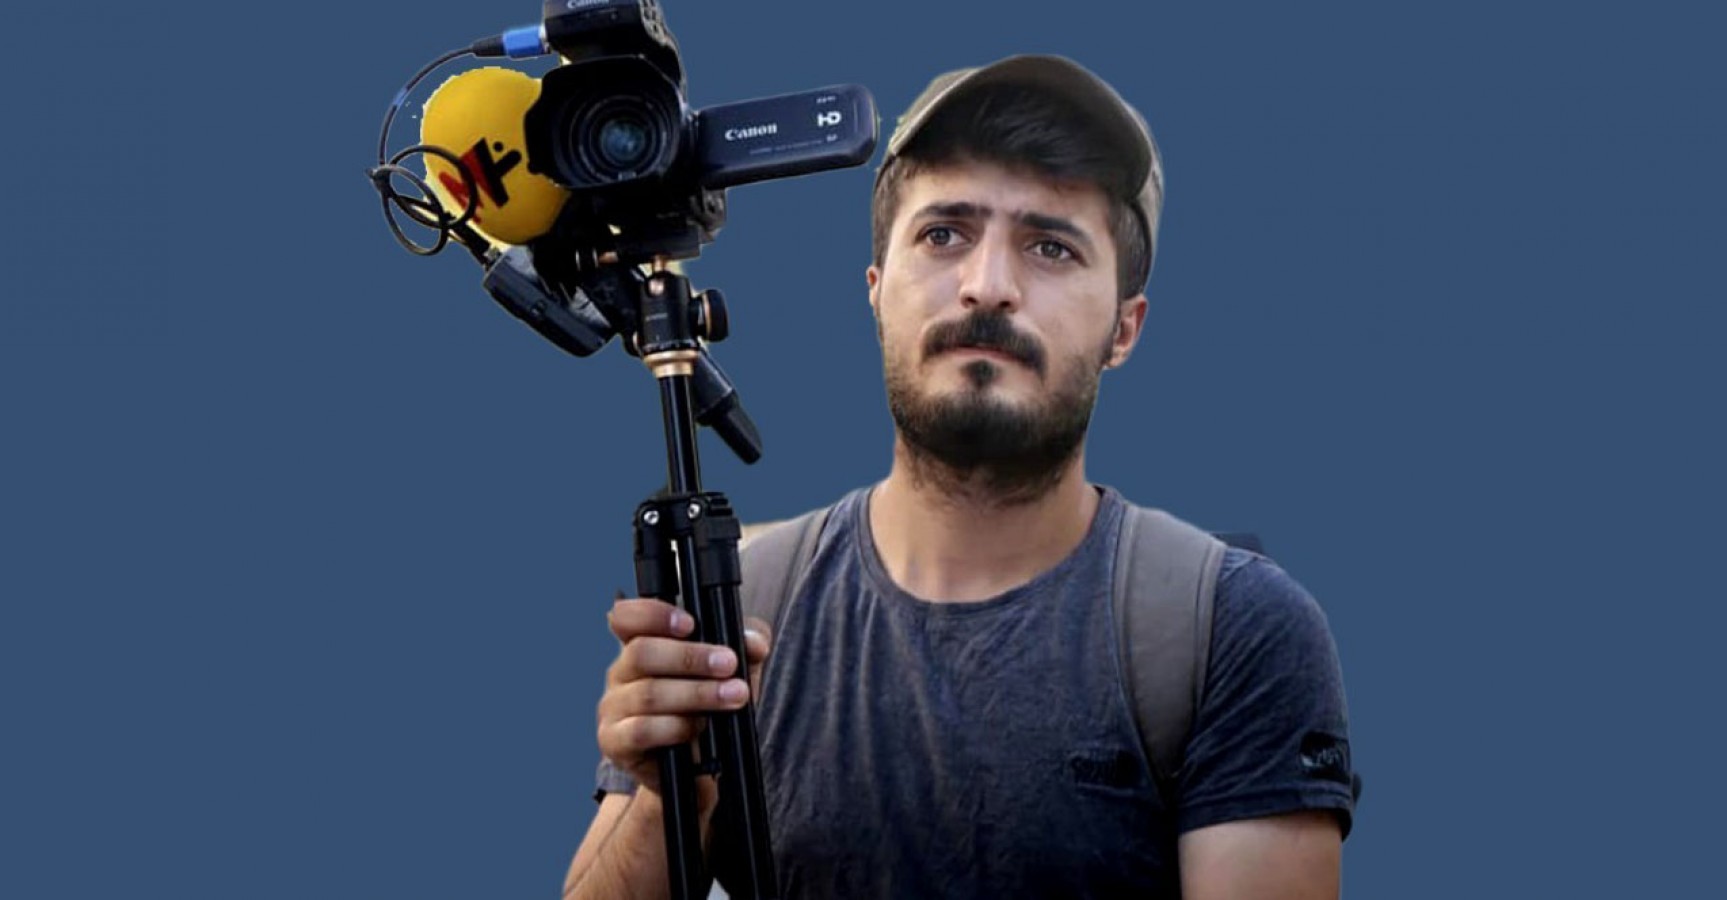 Urfa'da gözaltına alınan gazeteci için sosyal medyadan çağrı;